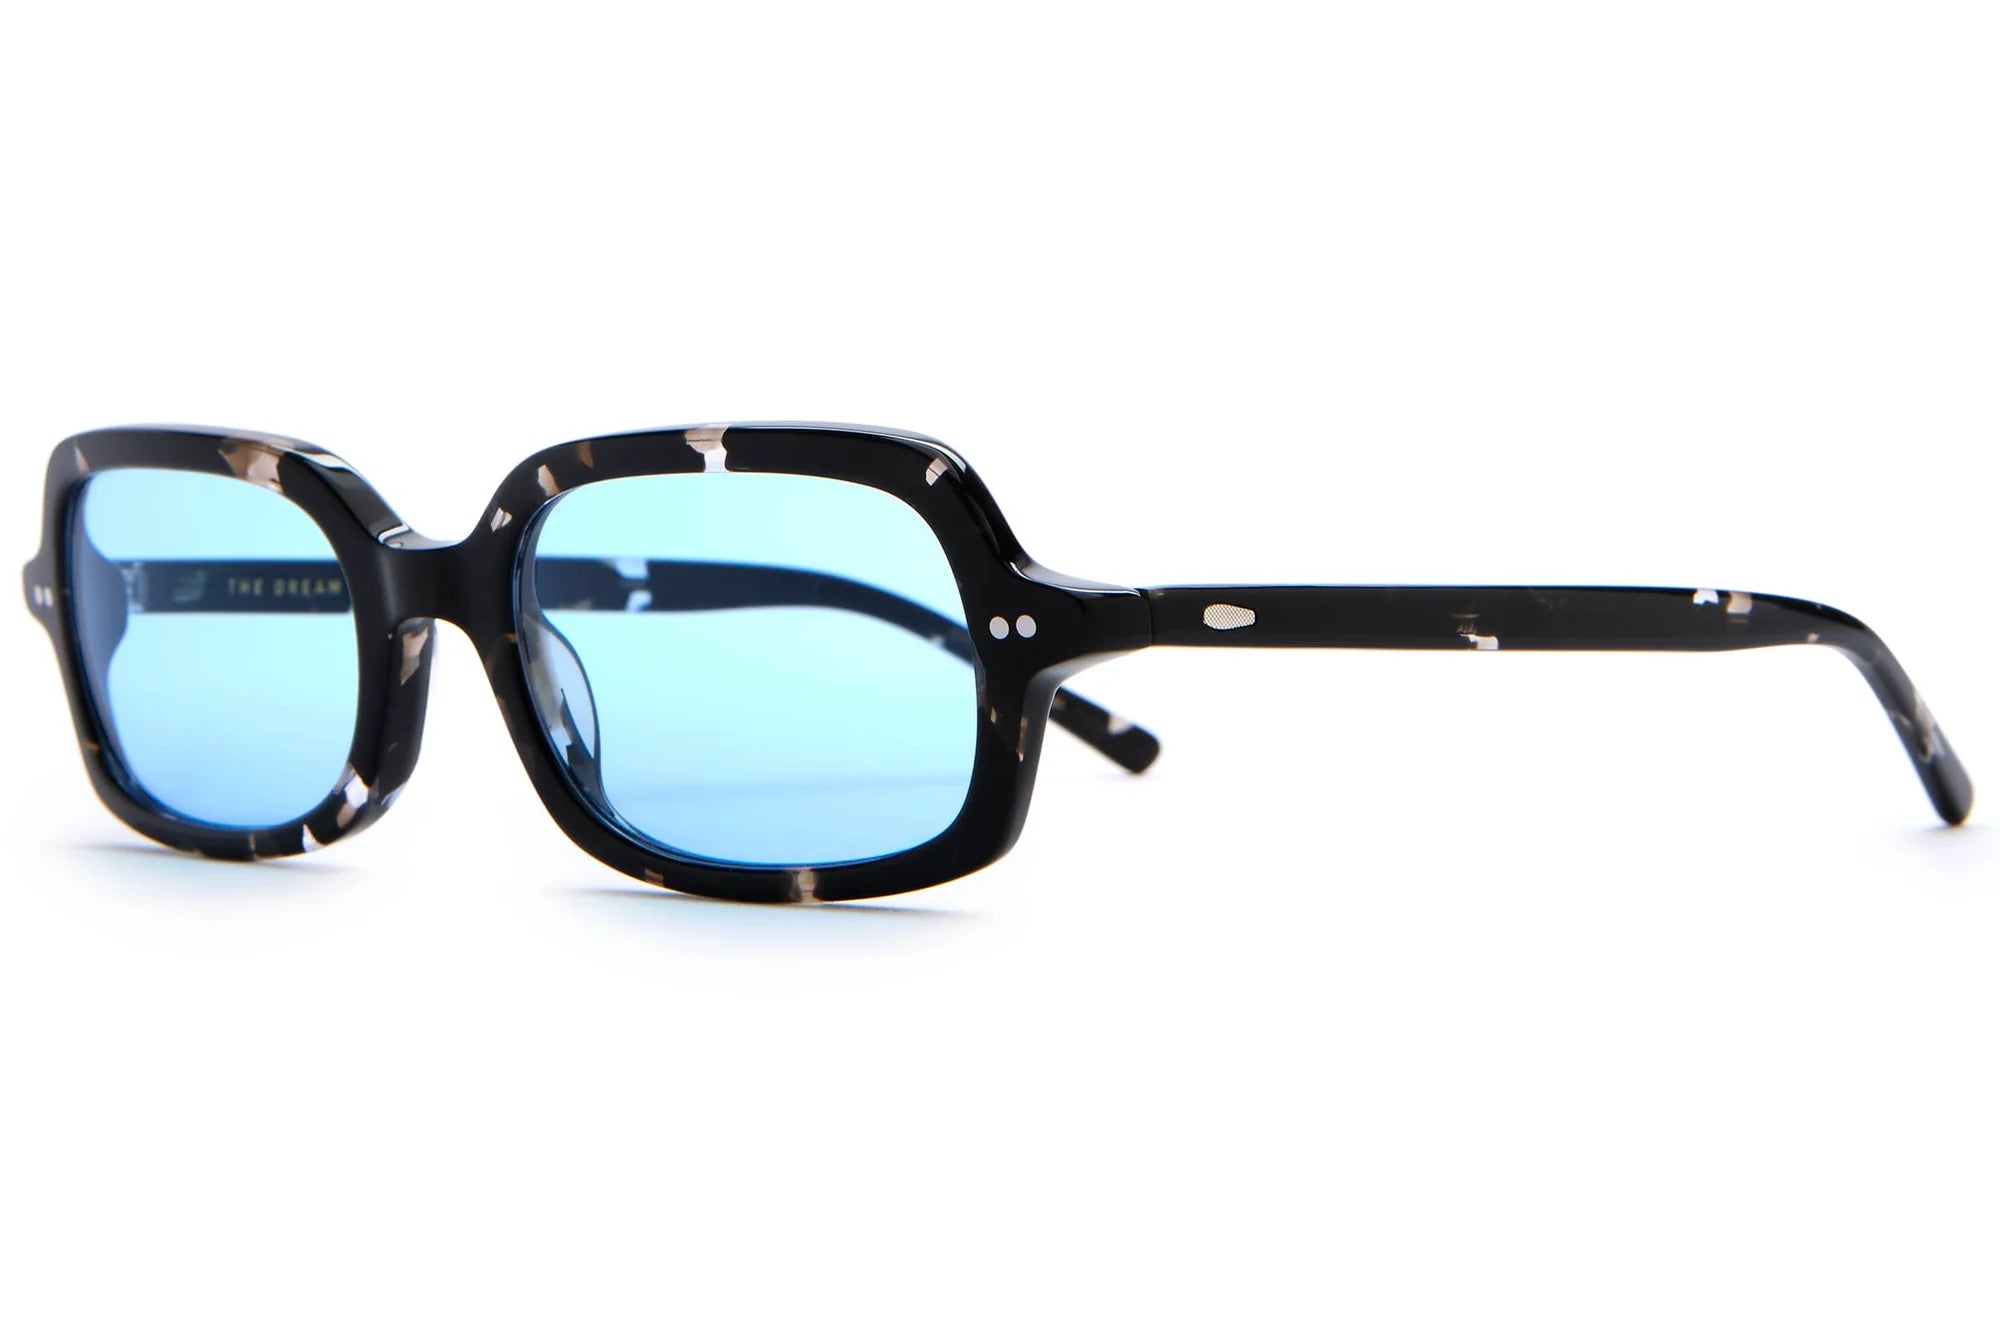 The Dream Cassette | Black Tortoise Blue Tint Sunglasses